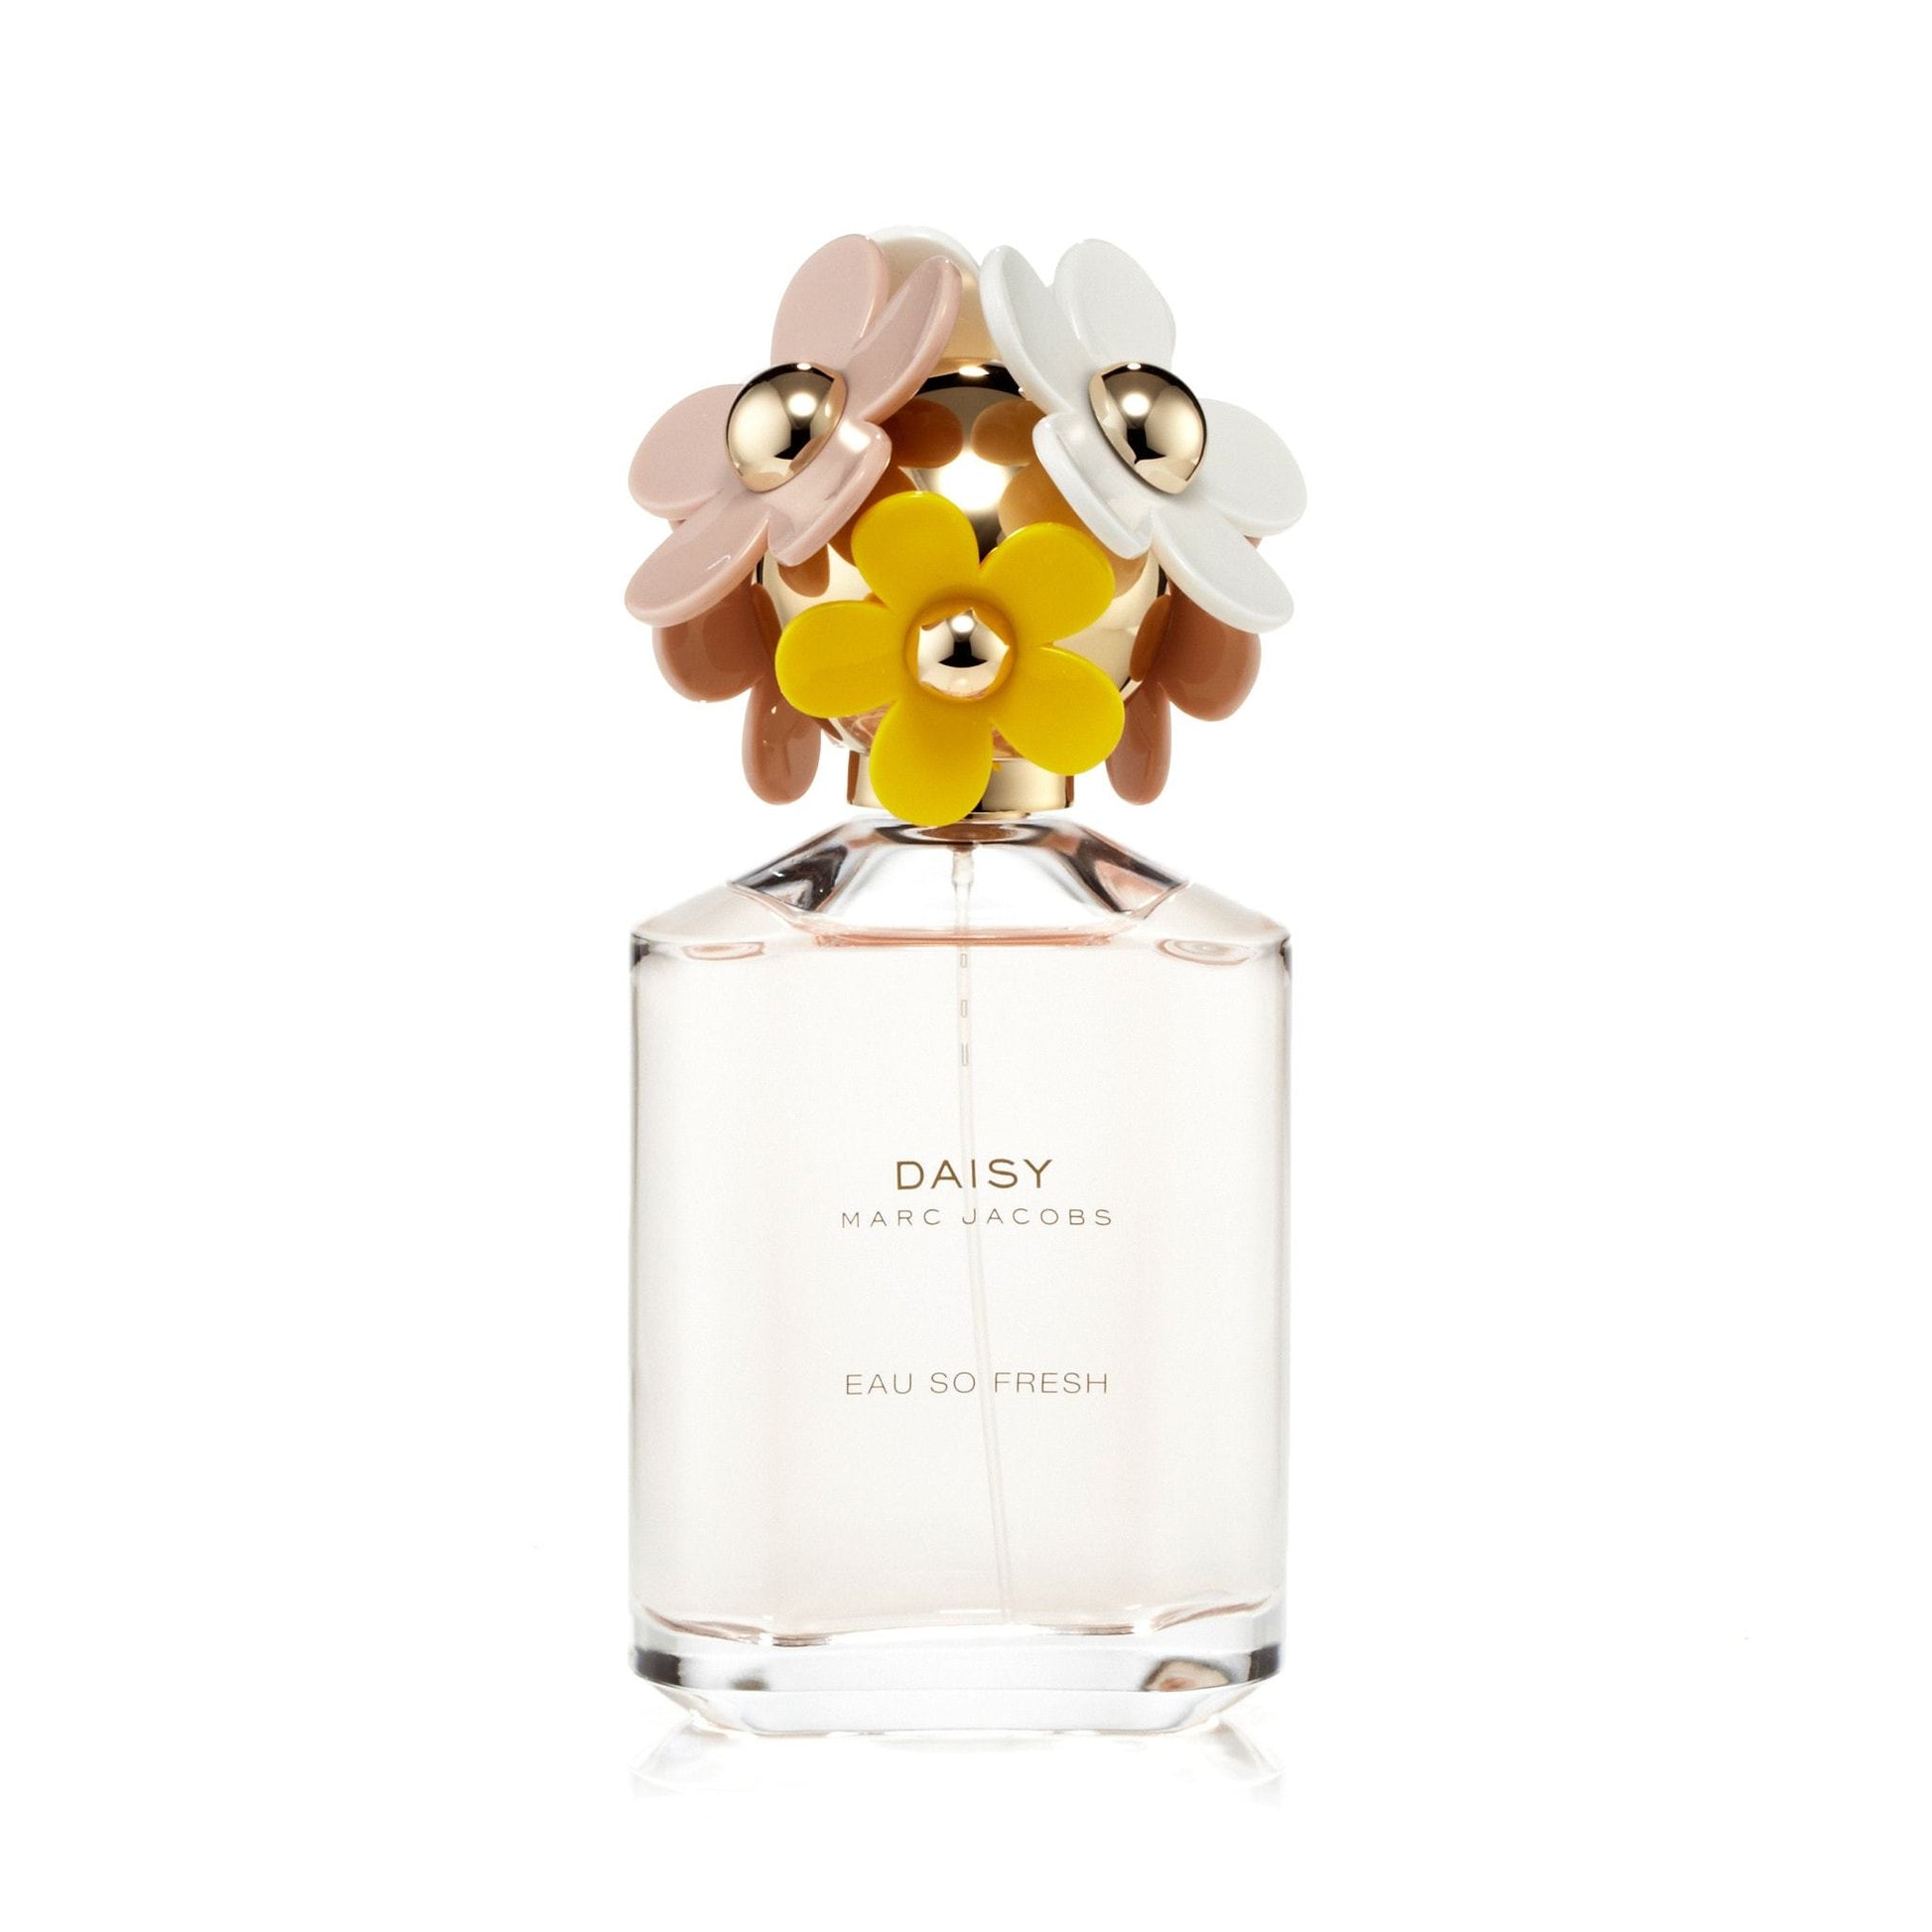 Daisy Eau So Fresh Eau de Toilette Spray for Women by Marc Jacobs, Product image 1